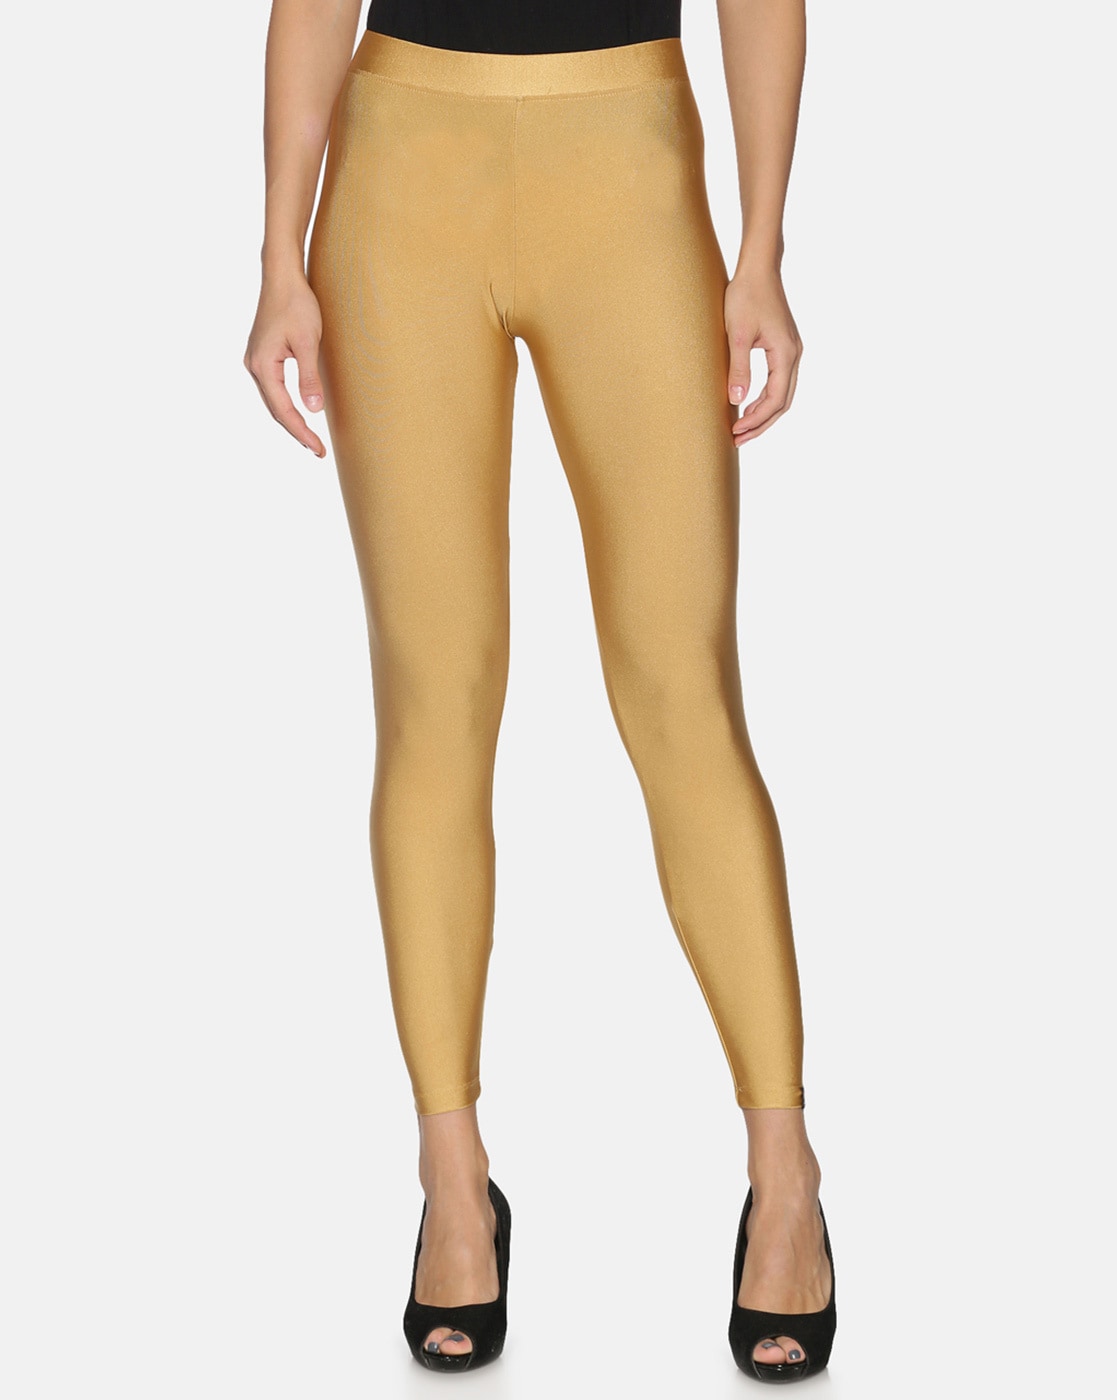 Share 139+ golden colour leggings best